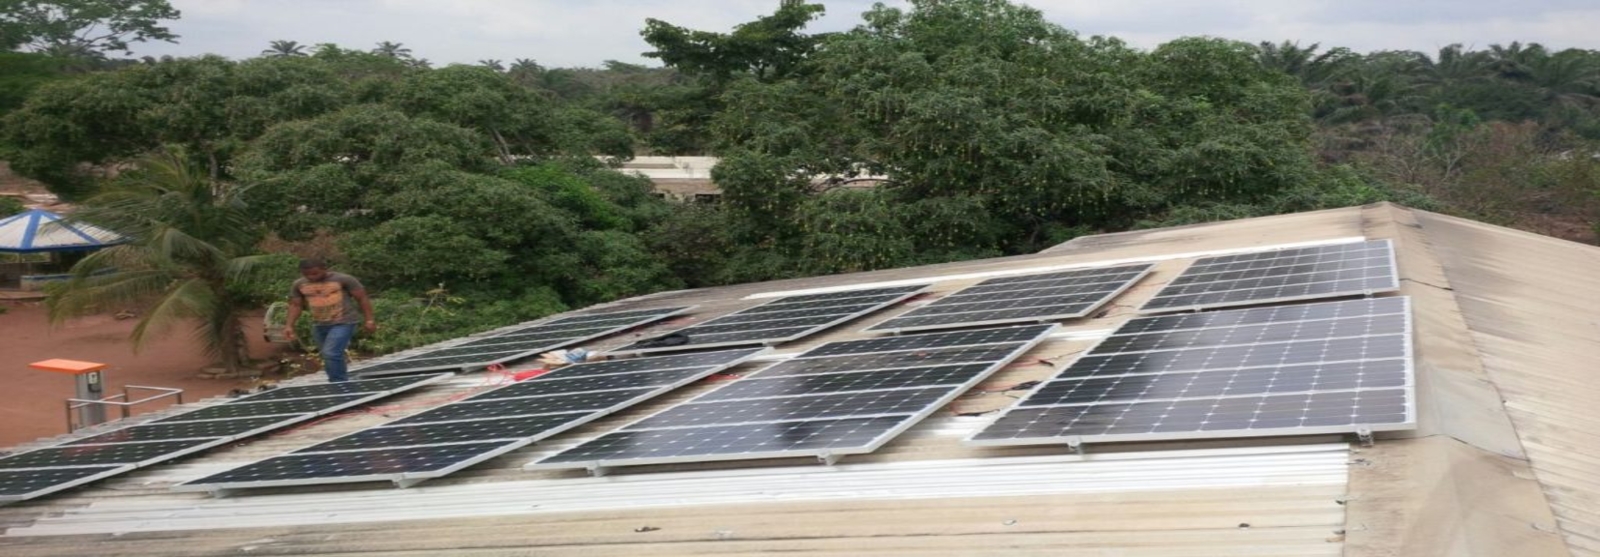 Solar for residential buildings